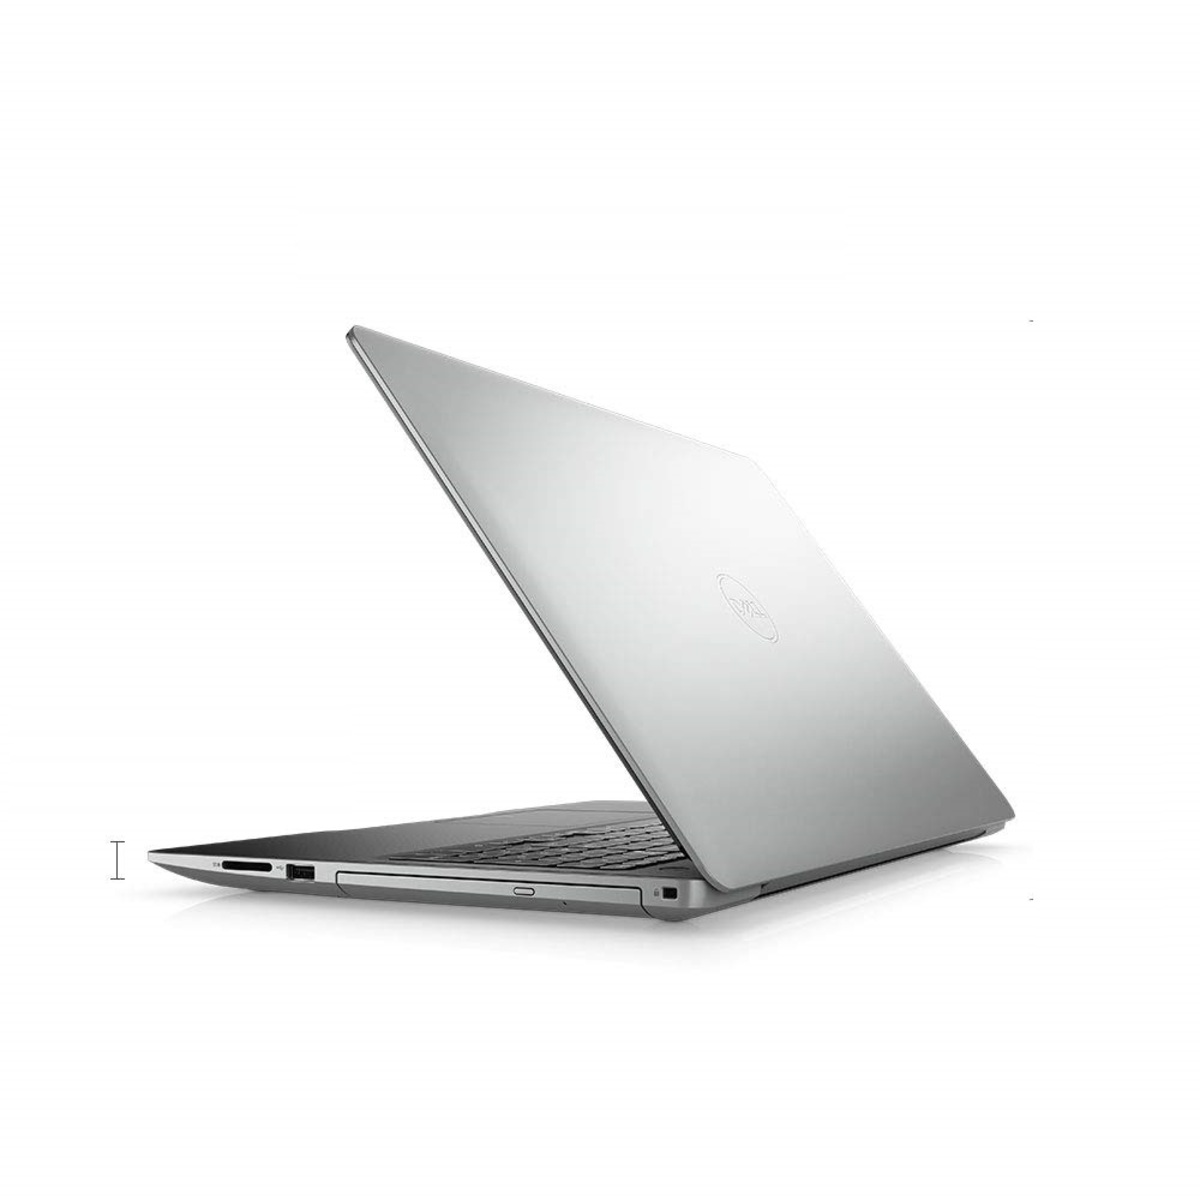 Dell Notebook 3593 Core i3 10th Gen 15.6" Win10 Silver